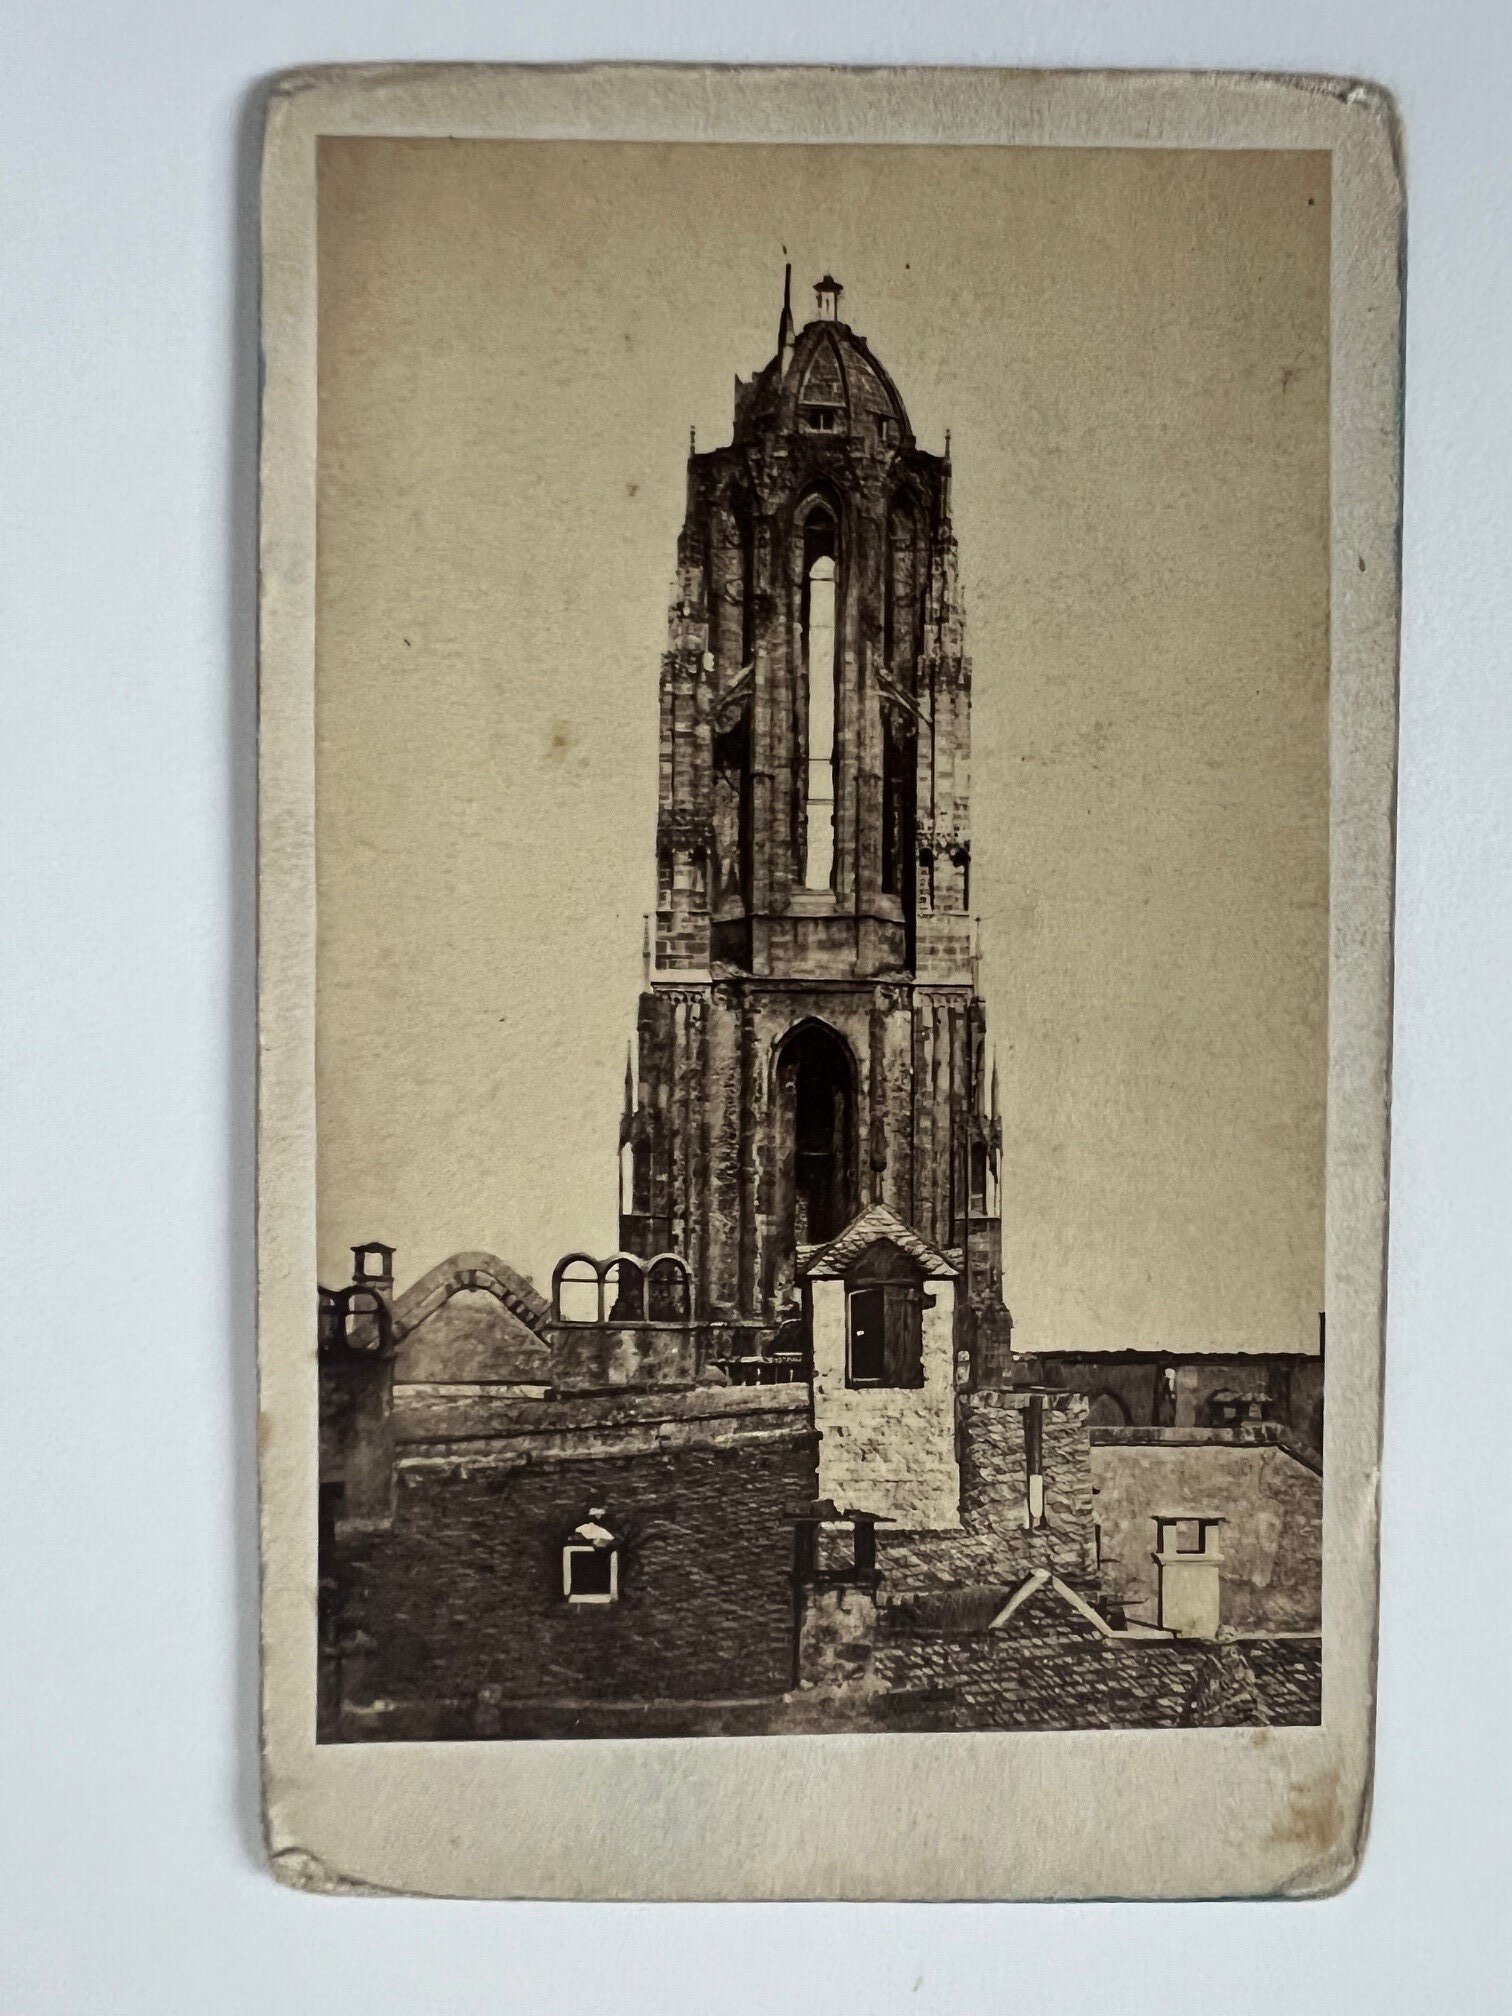 CdV, Friedrich Wilhelm Maas, Frankfurt, Der Dom nach dem Brand, ca. 1867. (Taunus-Rhein-Main - Regionalgeschichtliche Sammlung Dr. Stefan Naas CC BY-NC-SA)